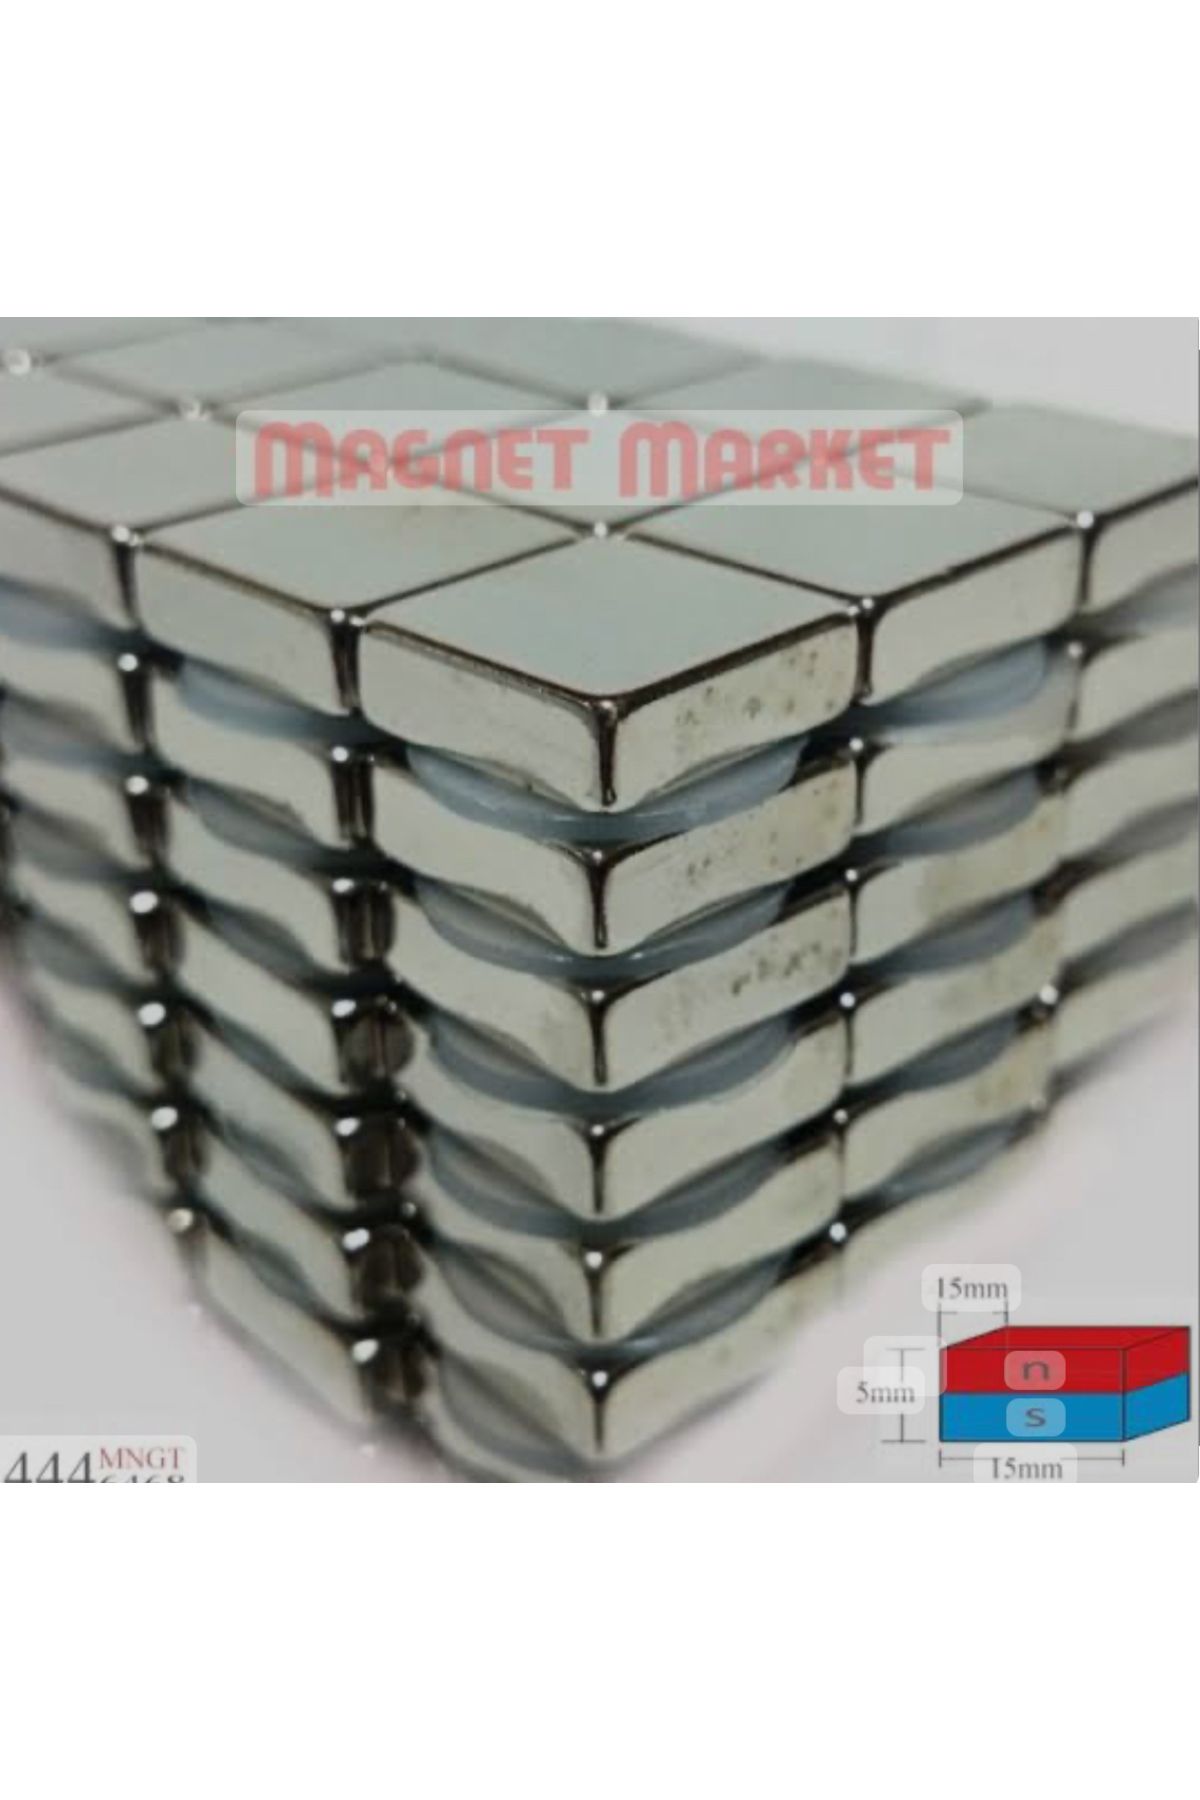 magnet market - 50 Adet - 15x15x5 - Boy 15mm X En 15mm X Kalınlık 5mm Neodymium Magnet